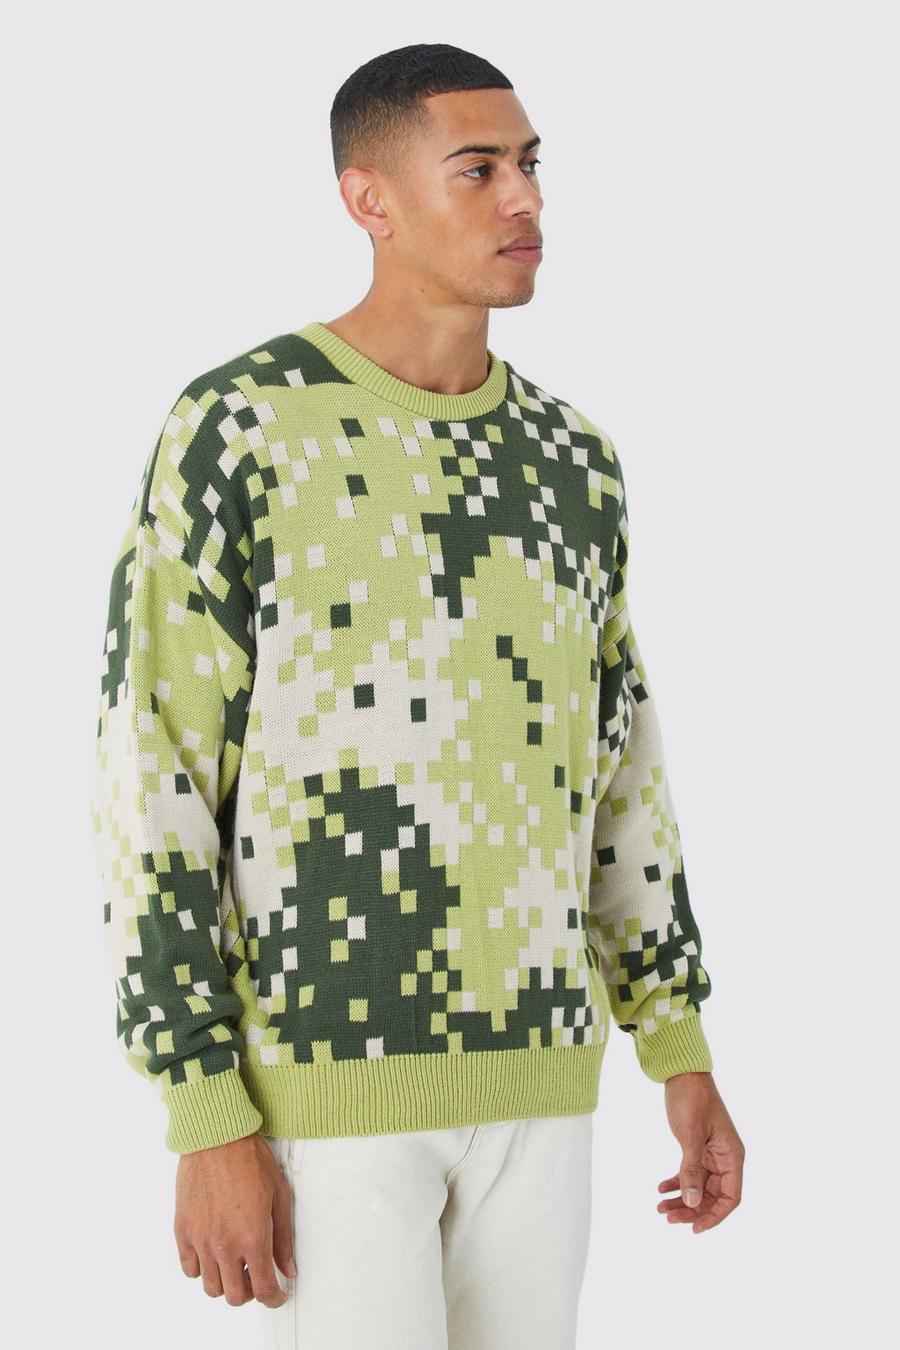 Maglione oversize in maglia in fantasia militare pixelata, Green